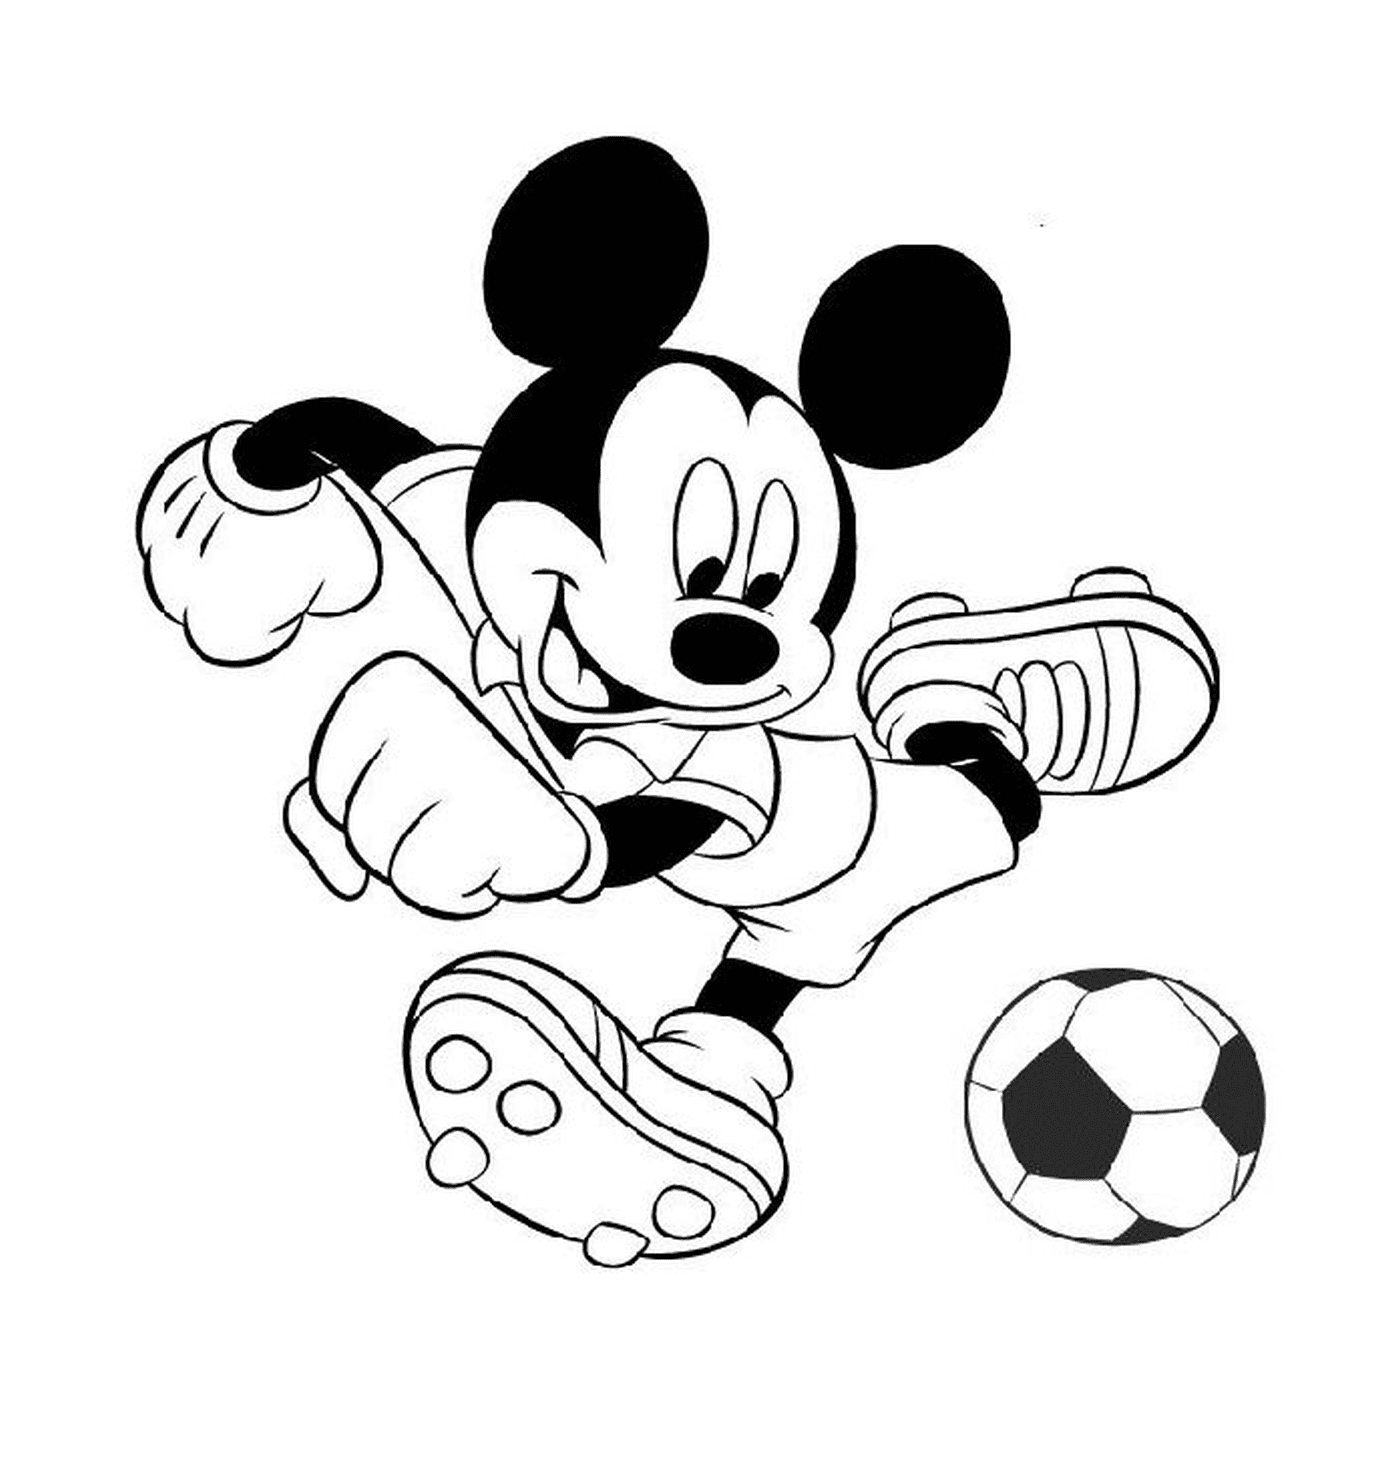  Mickey Maus spielt Fußball 